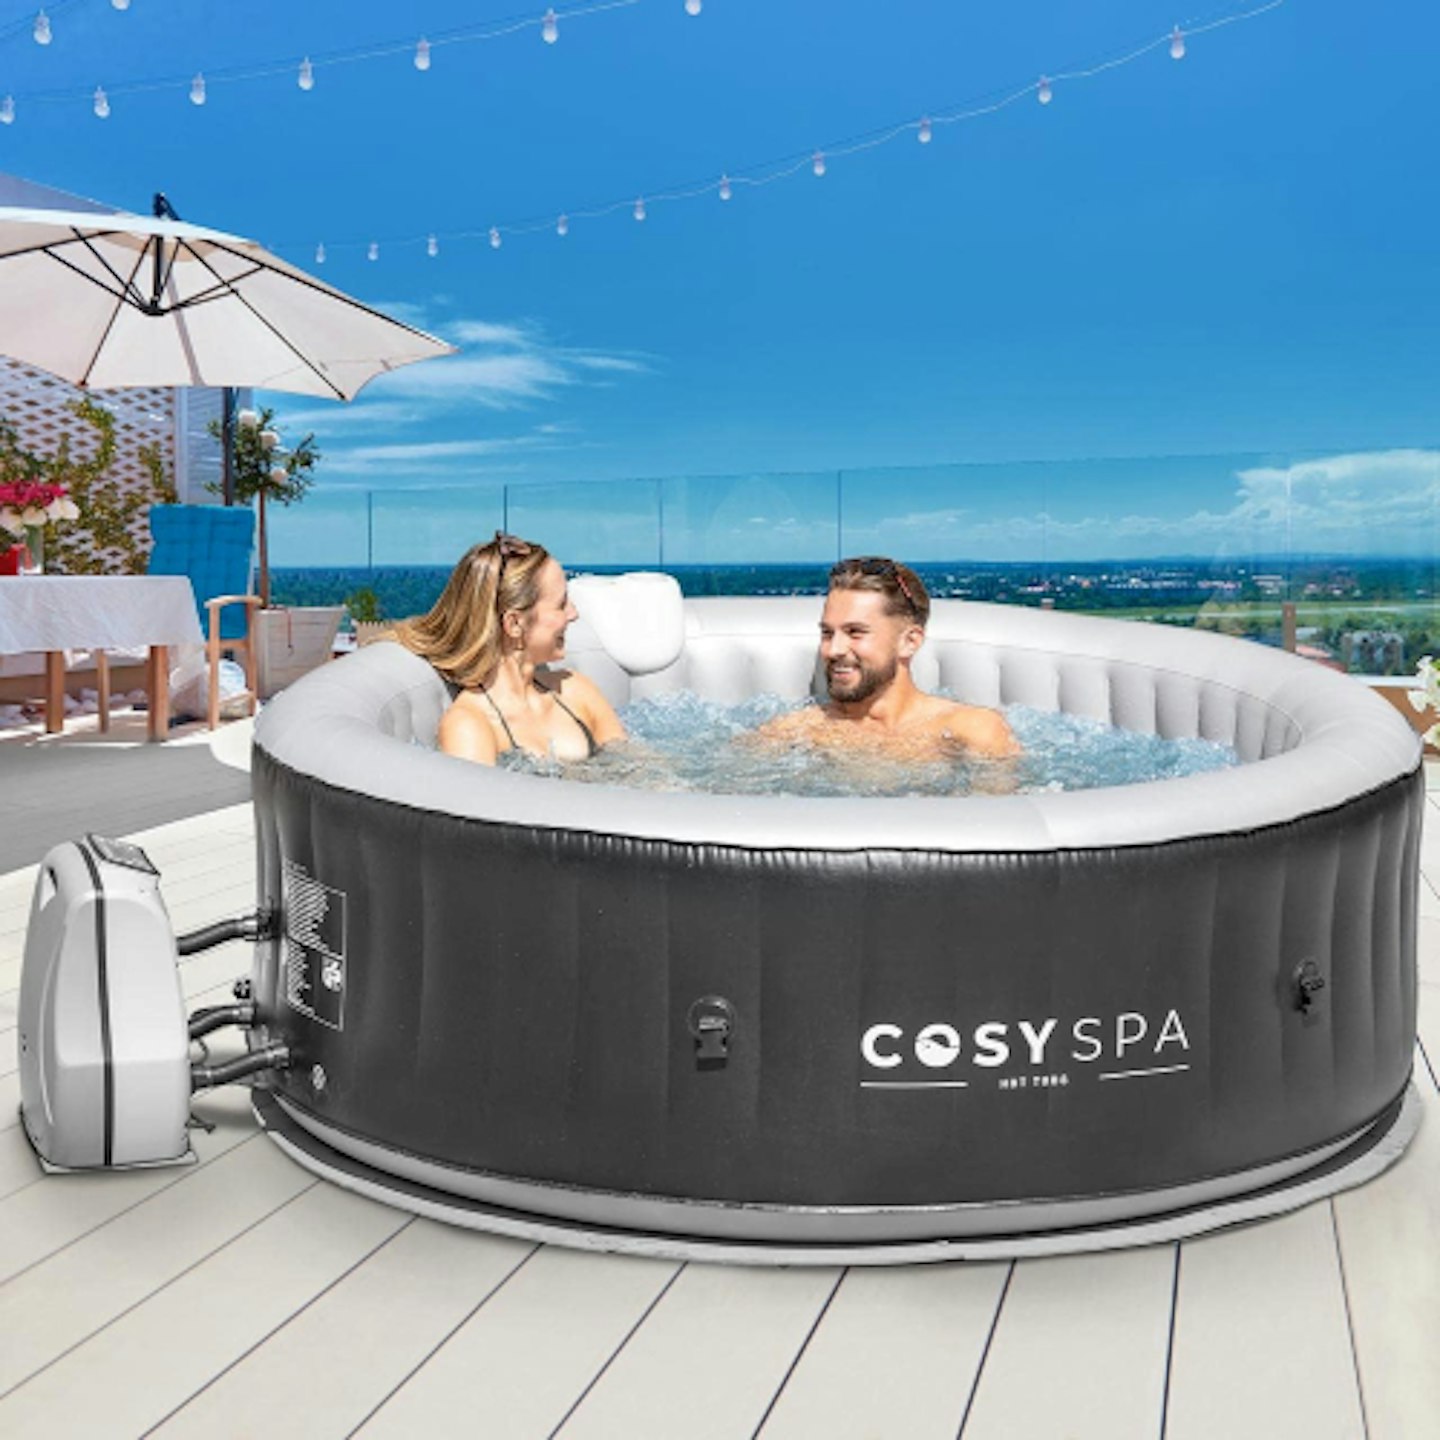 Cosyspa hot tub 